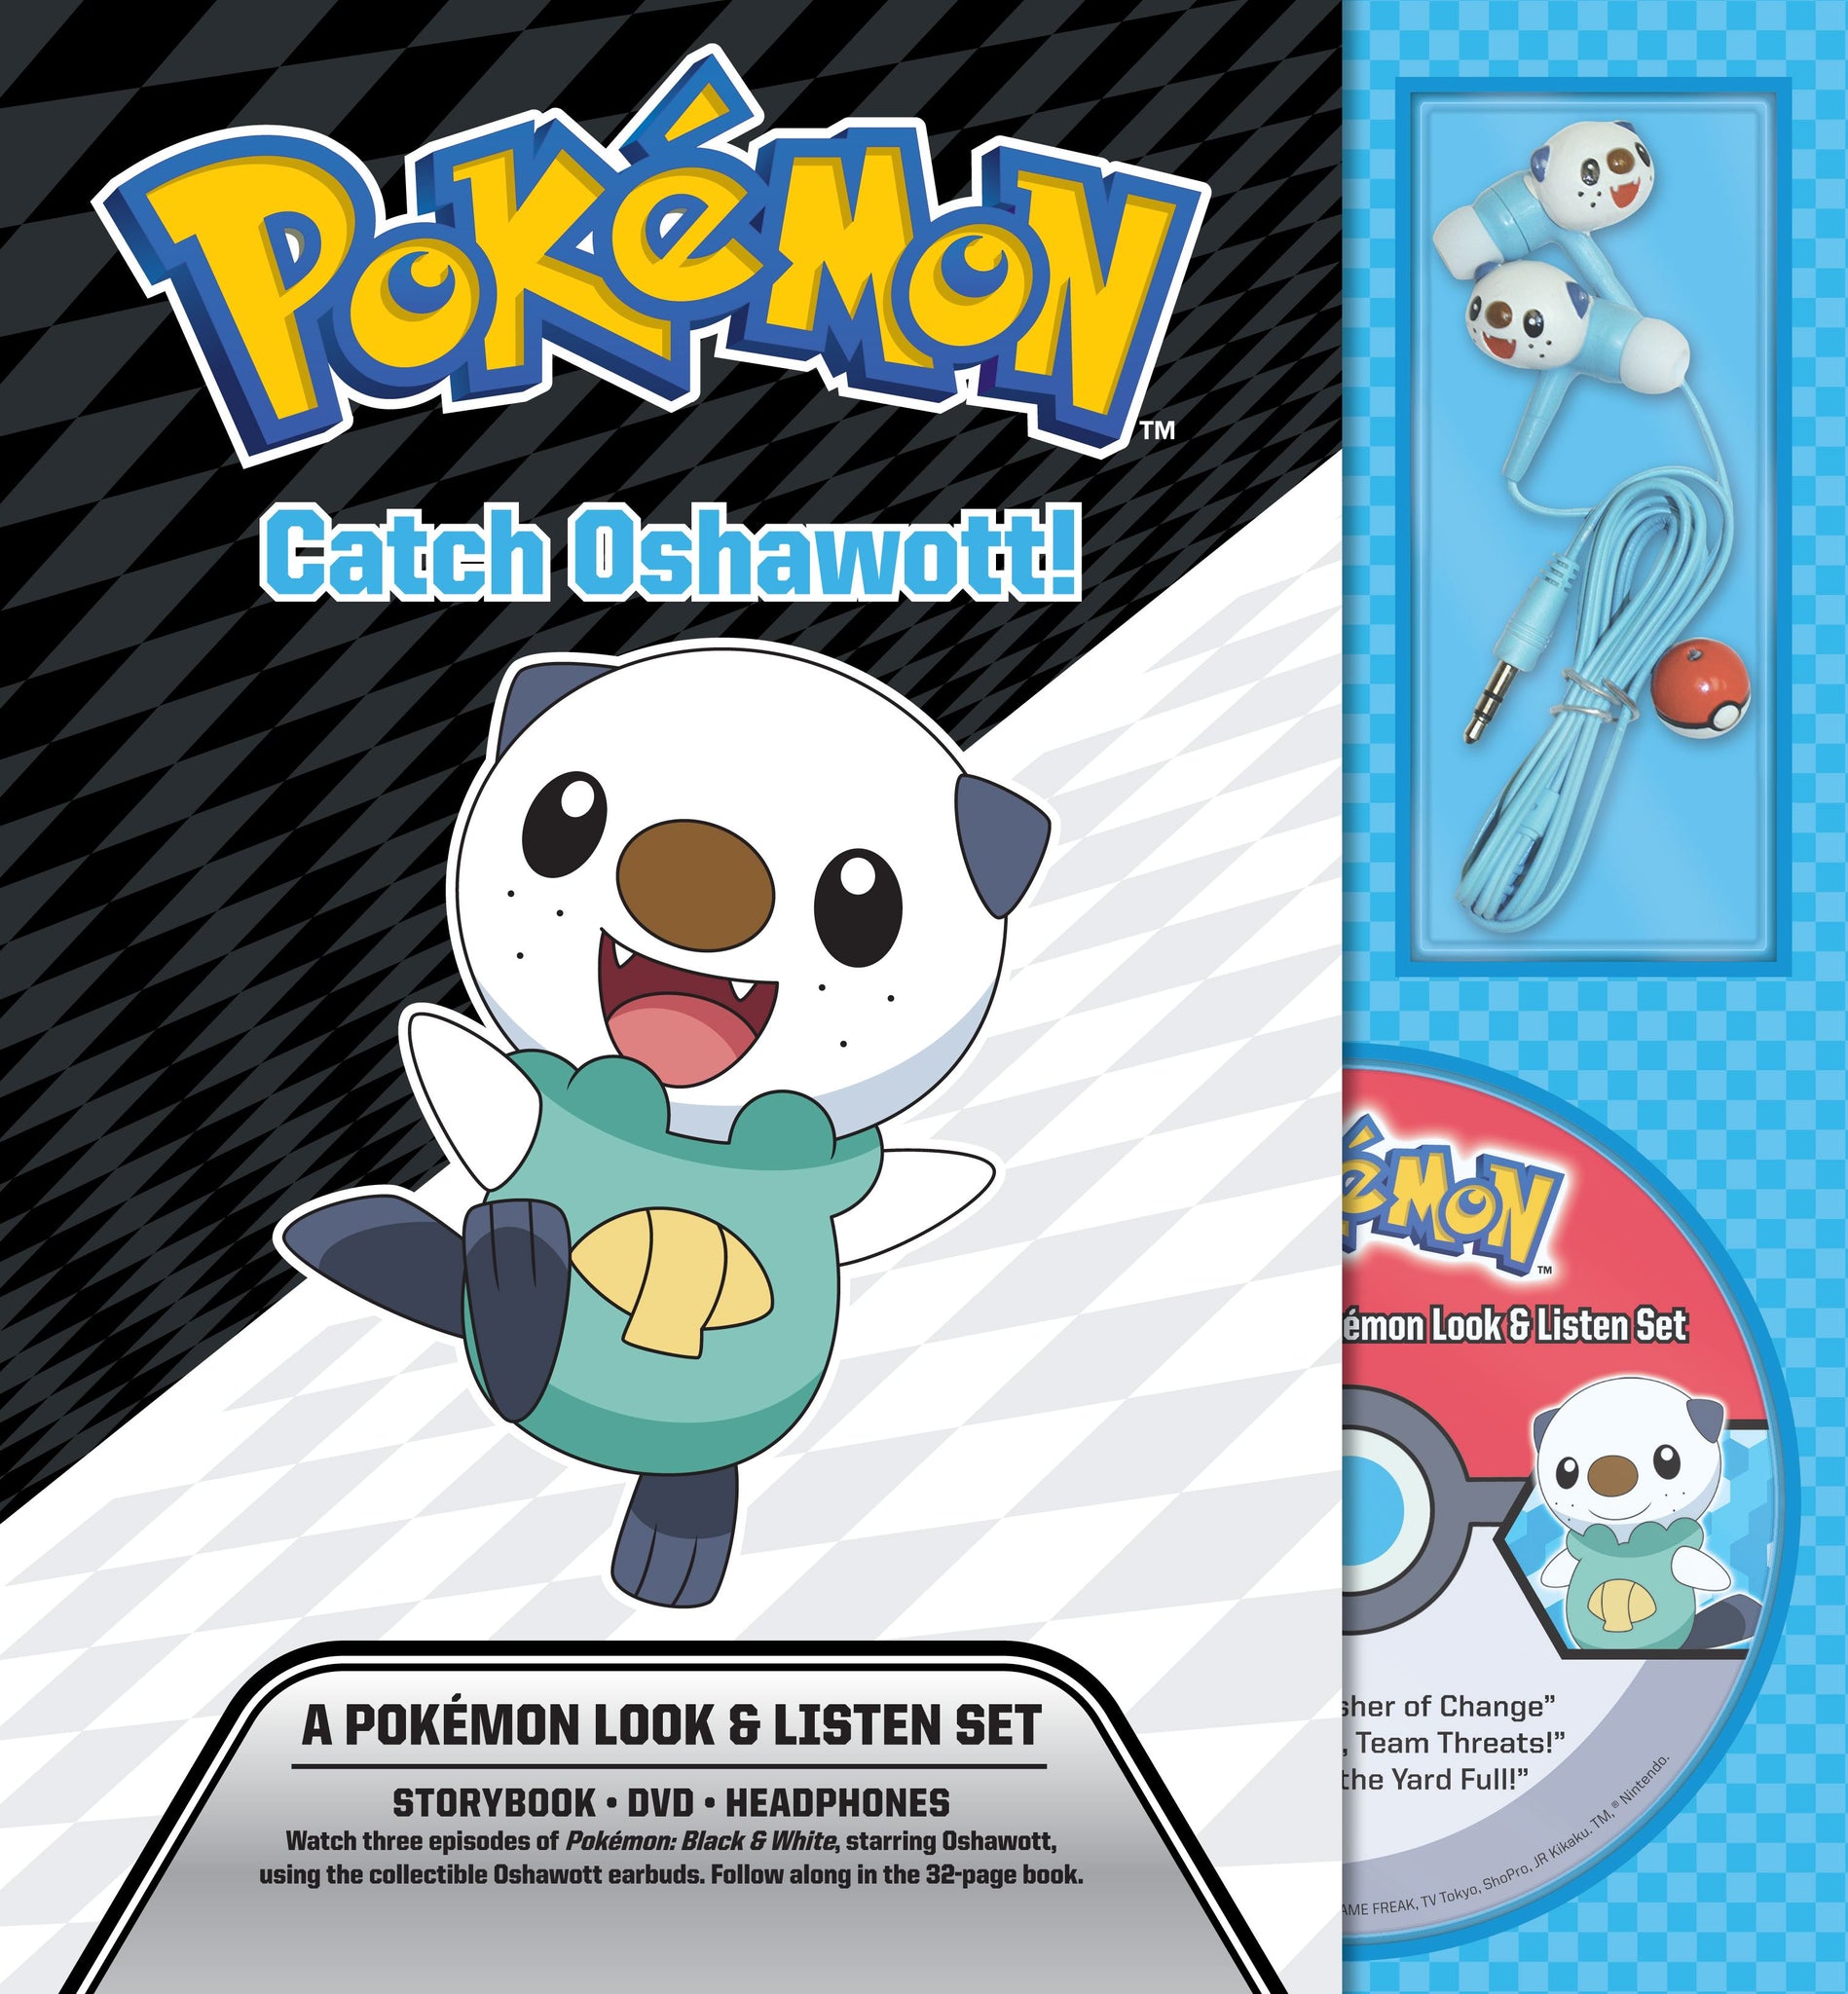 Catch Oshawott! A Pokémon Look & Listen Set